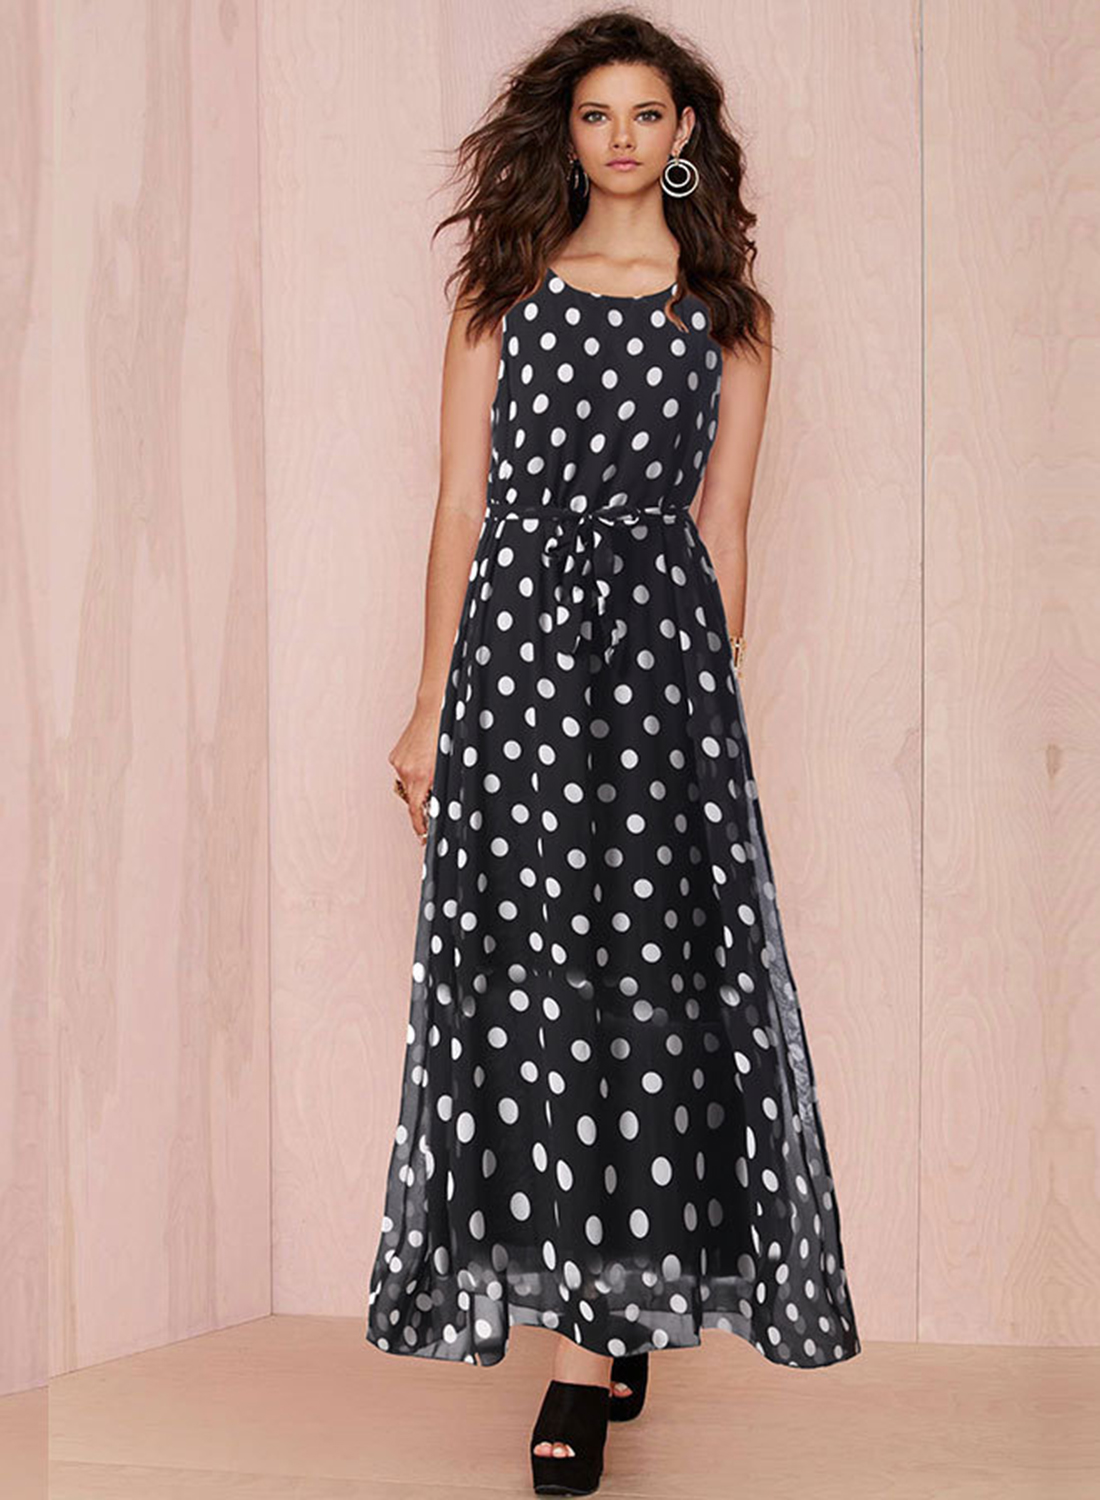 Fashion Sleeveless Polka Dots Maxi Dress - STYLESIMO.com